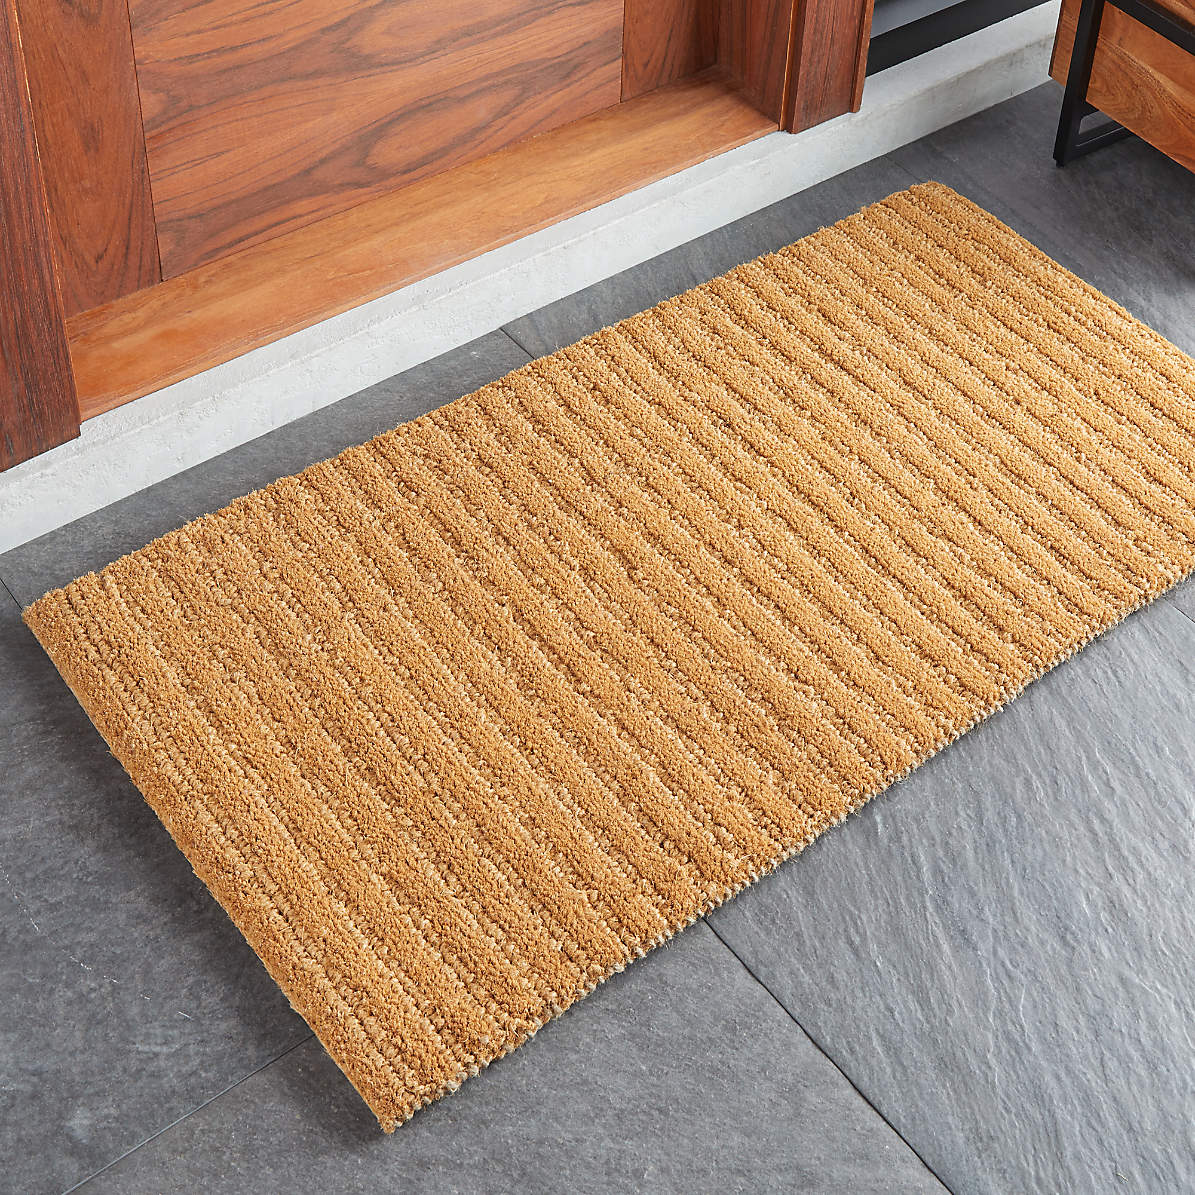 Light Brown and Black Cotton Knitted Mat floor mats and door mats